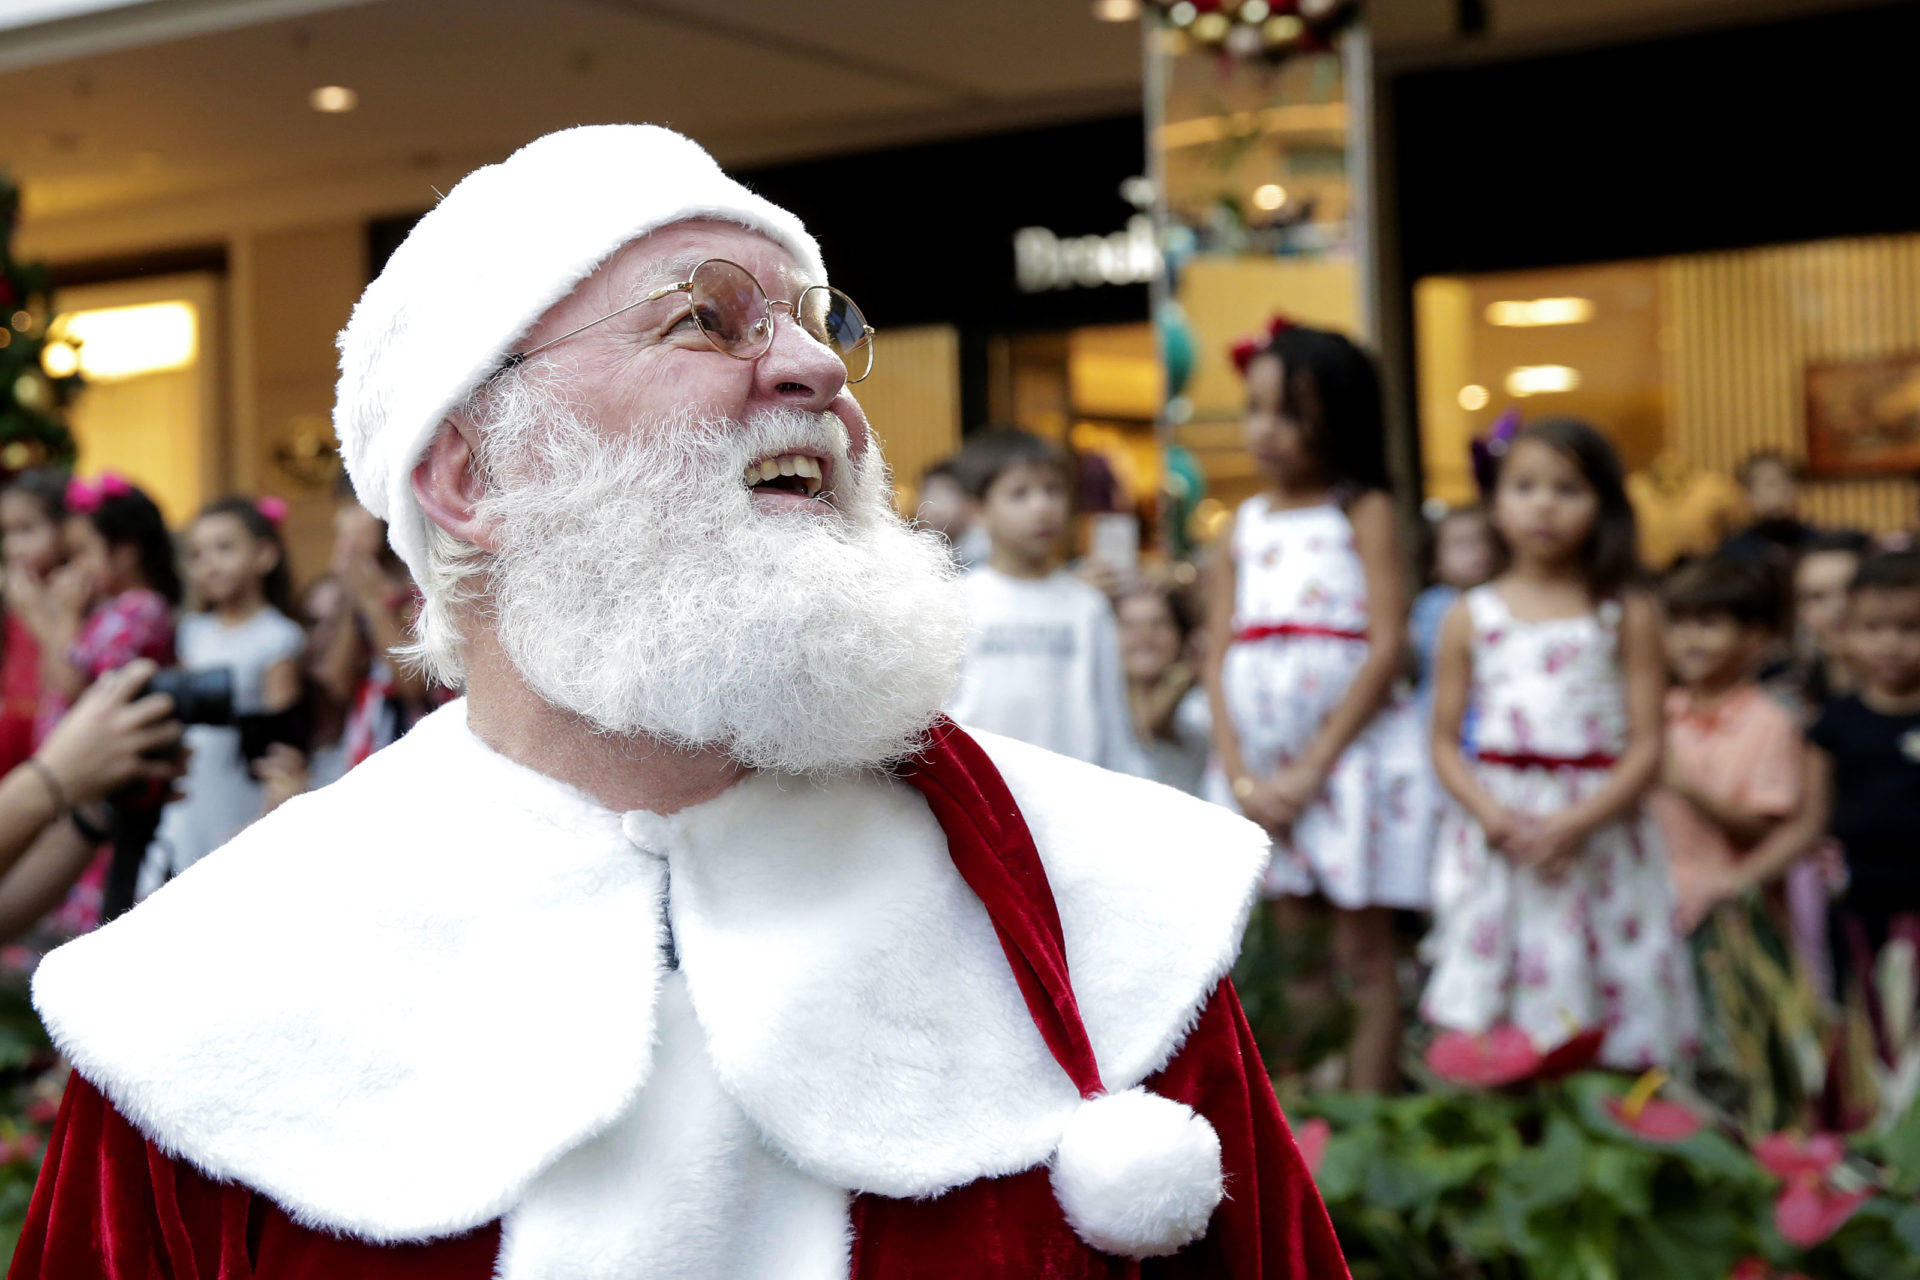 Doce Natal do Parkshopping: Papai Noel chega no próximo domingo - Estilozzo